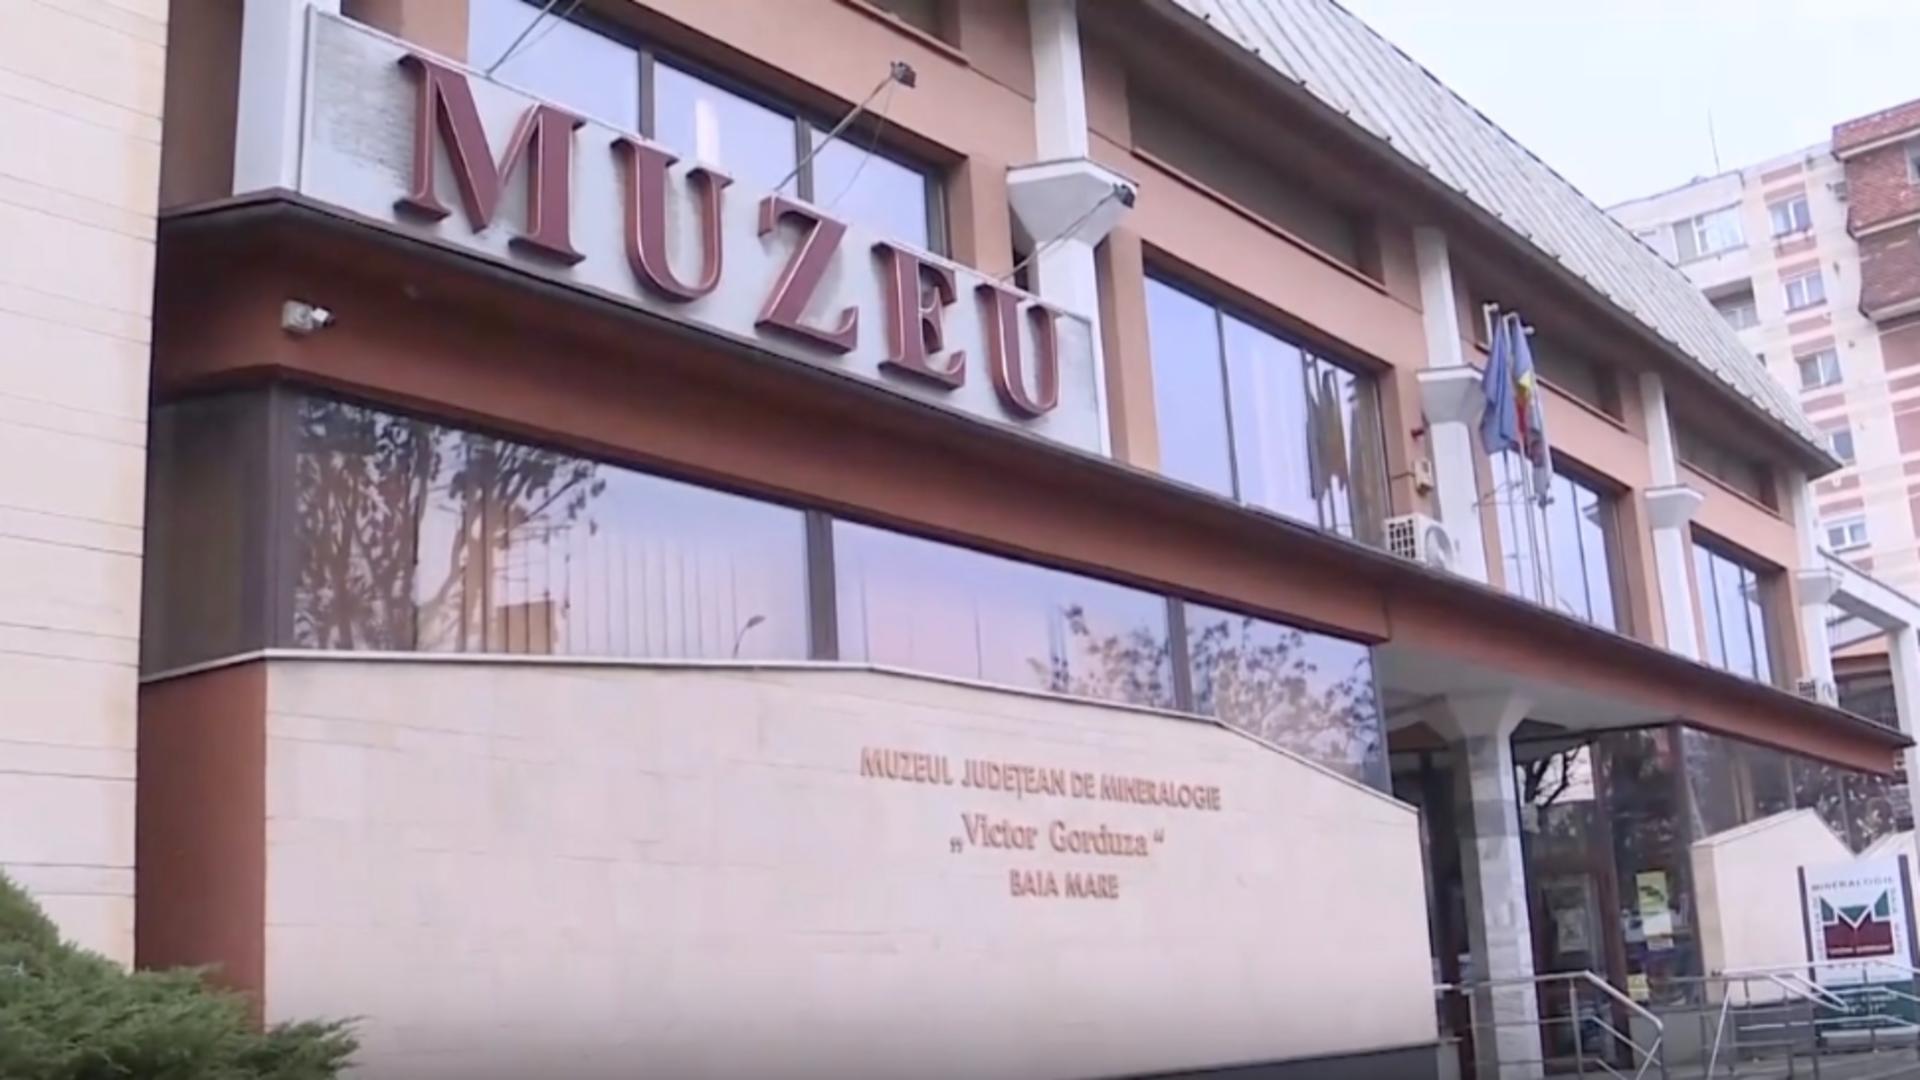 Comorile neștiute ale Maramureșului: expoziția Muzeului de Mineralogie, faimoasă în toată lumea